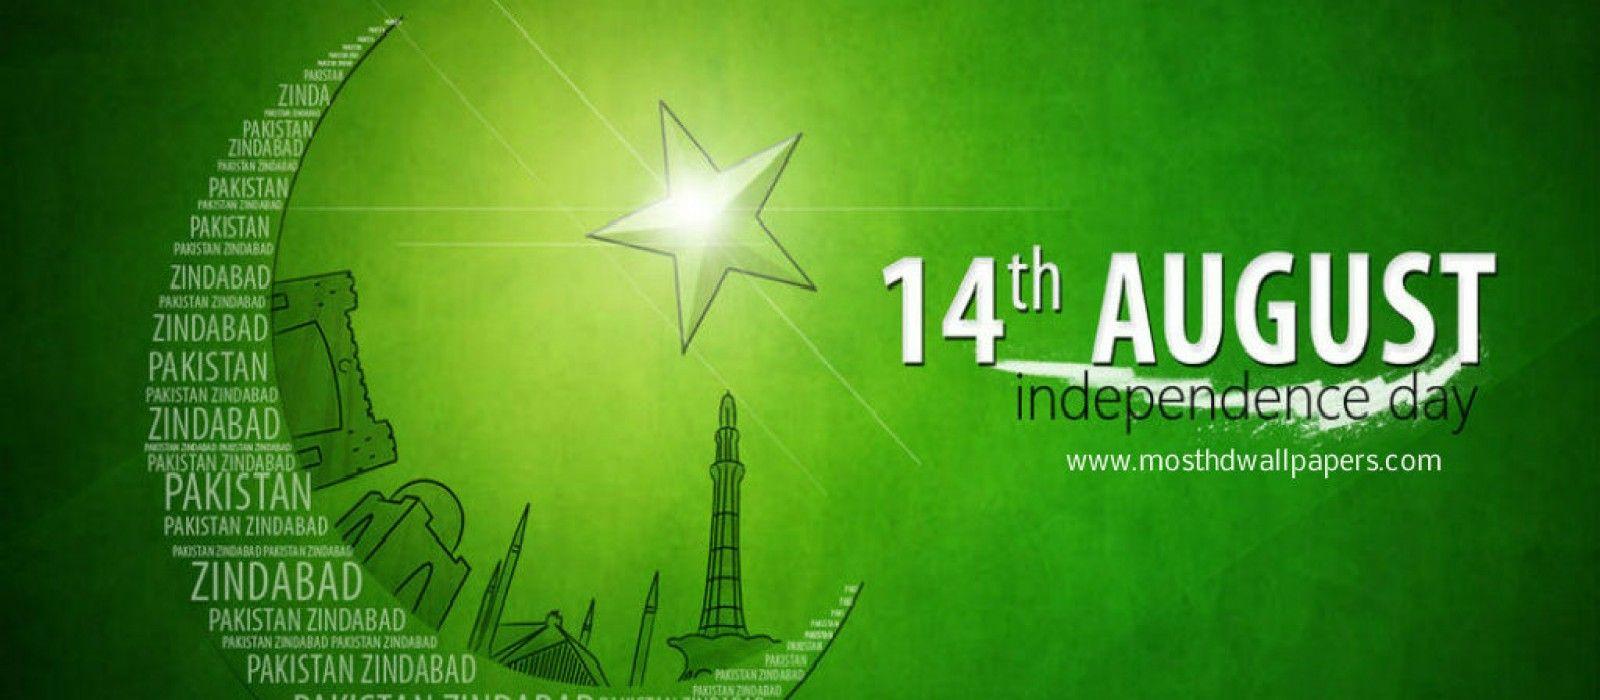 Pakistan Flag HD Image, Wallpaper & Pics Aug Image